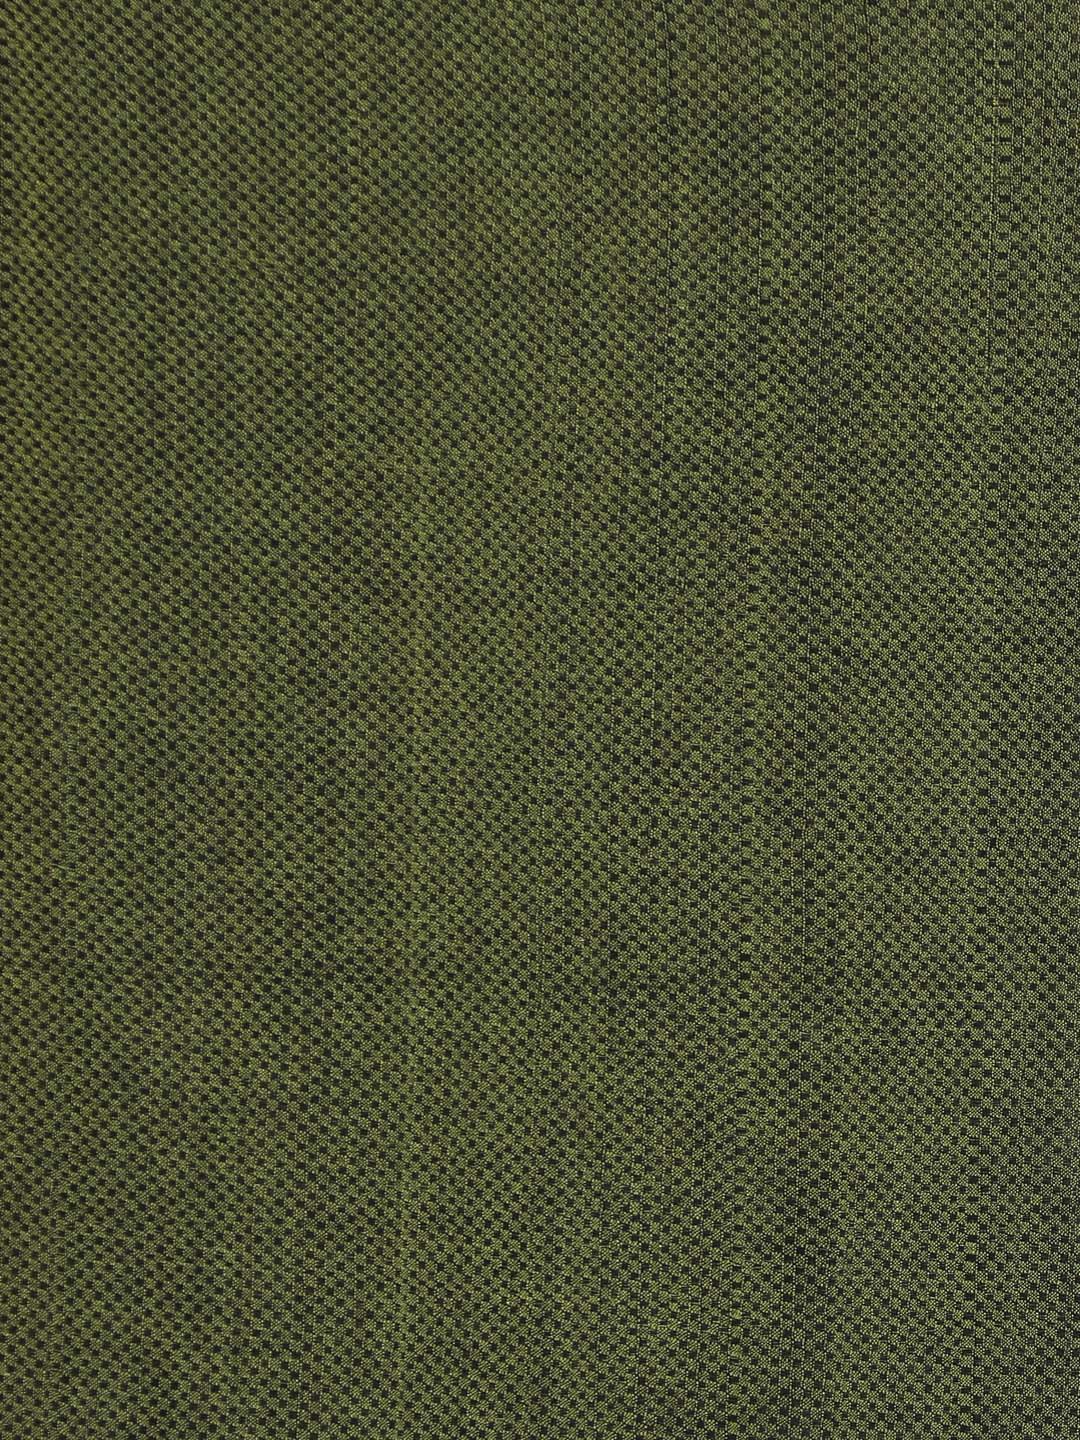 Indethnic Olive Bengal Handloom Pure Cotton Saree Party Saree - Saree Detail View